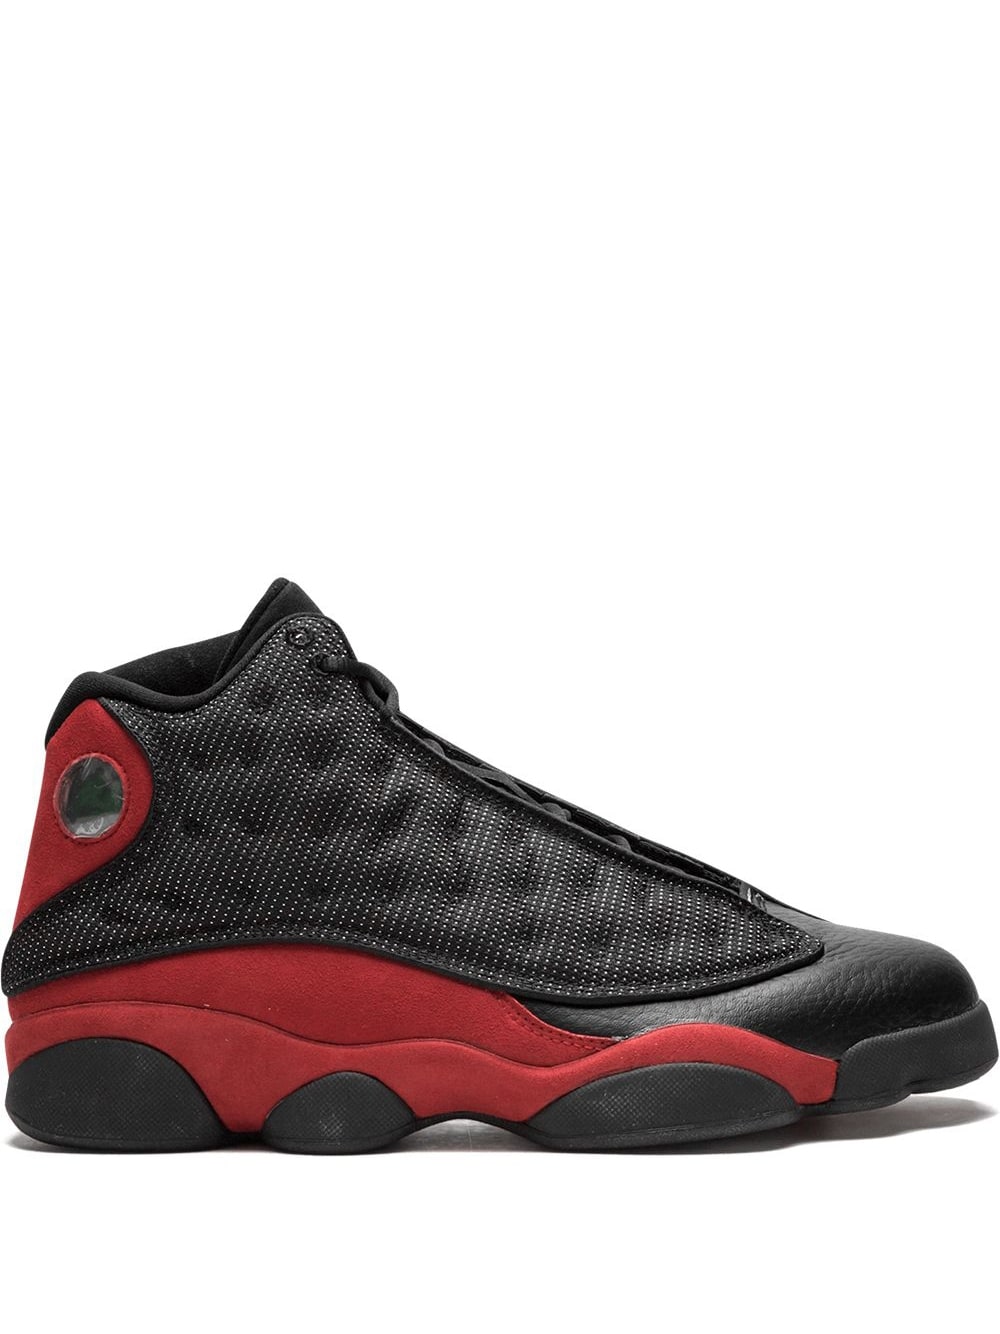 Jordan Air Jordan 13 Retro "Bred 2013 Release" sneakers - Black